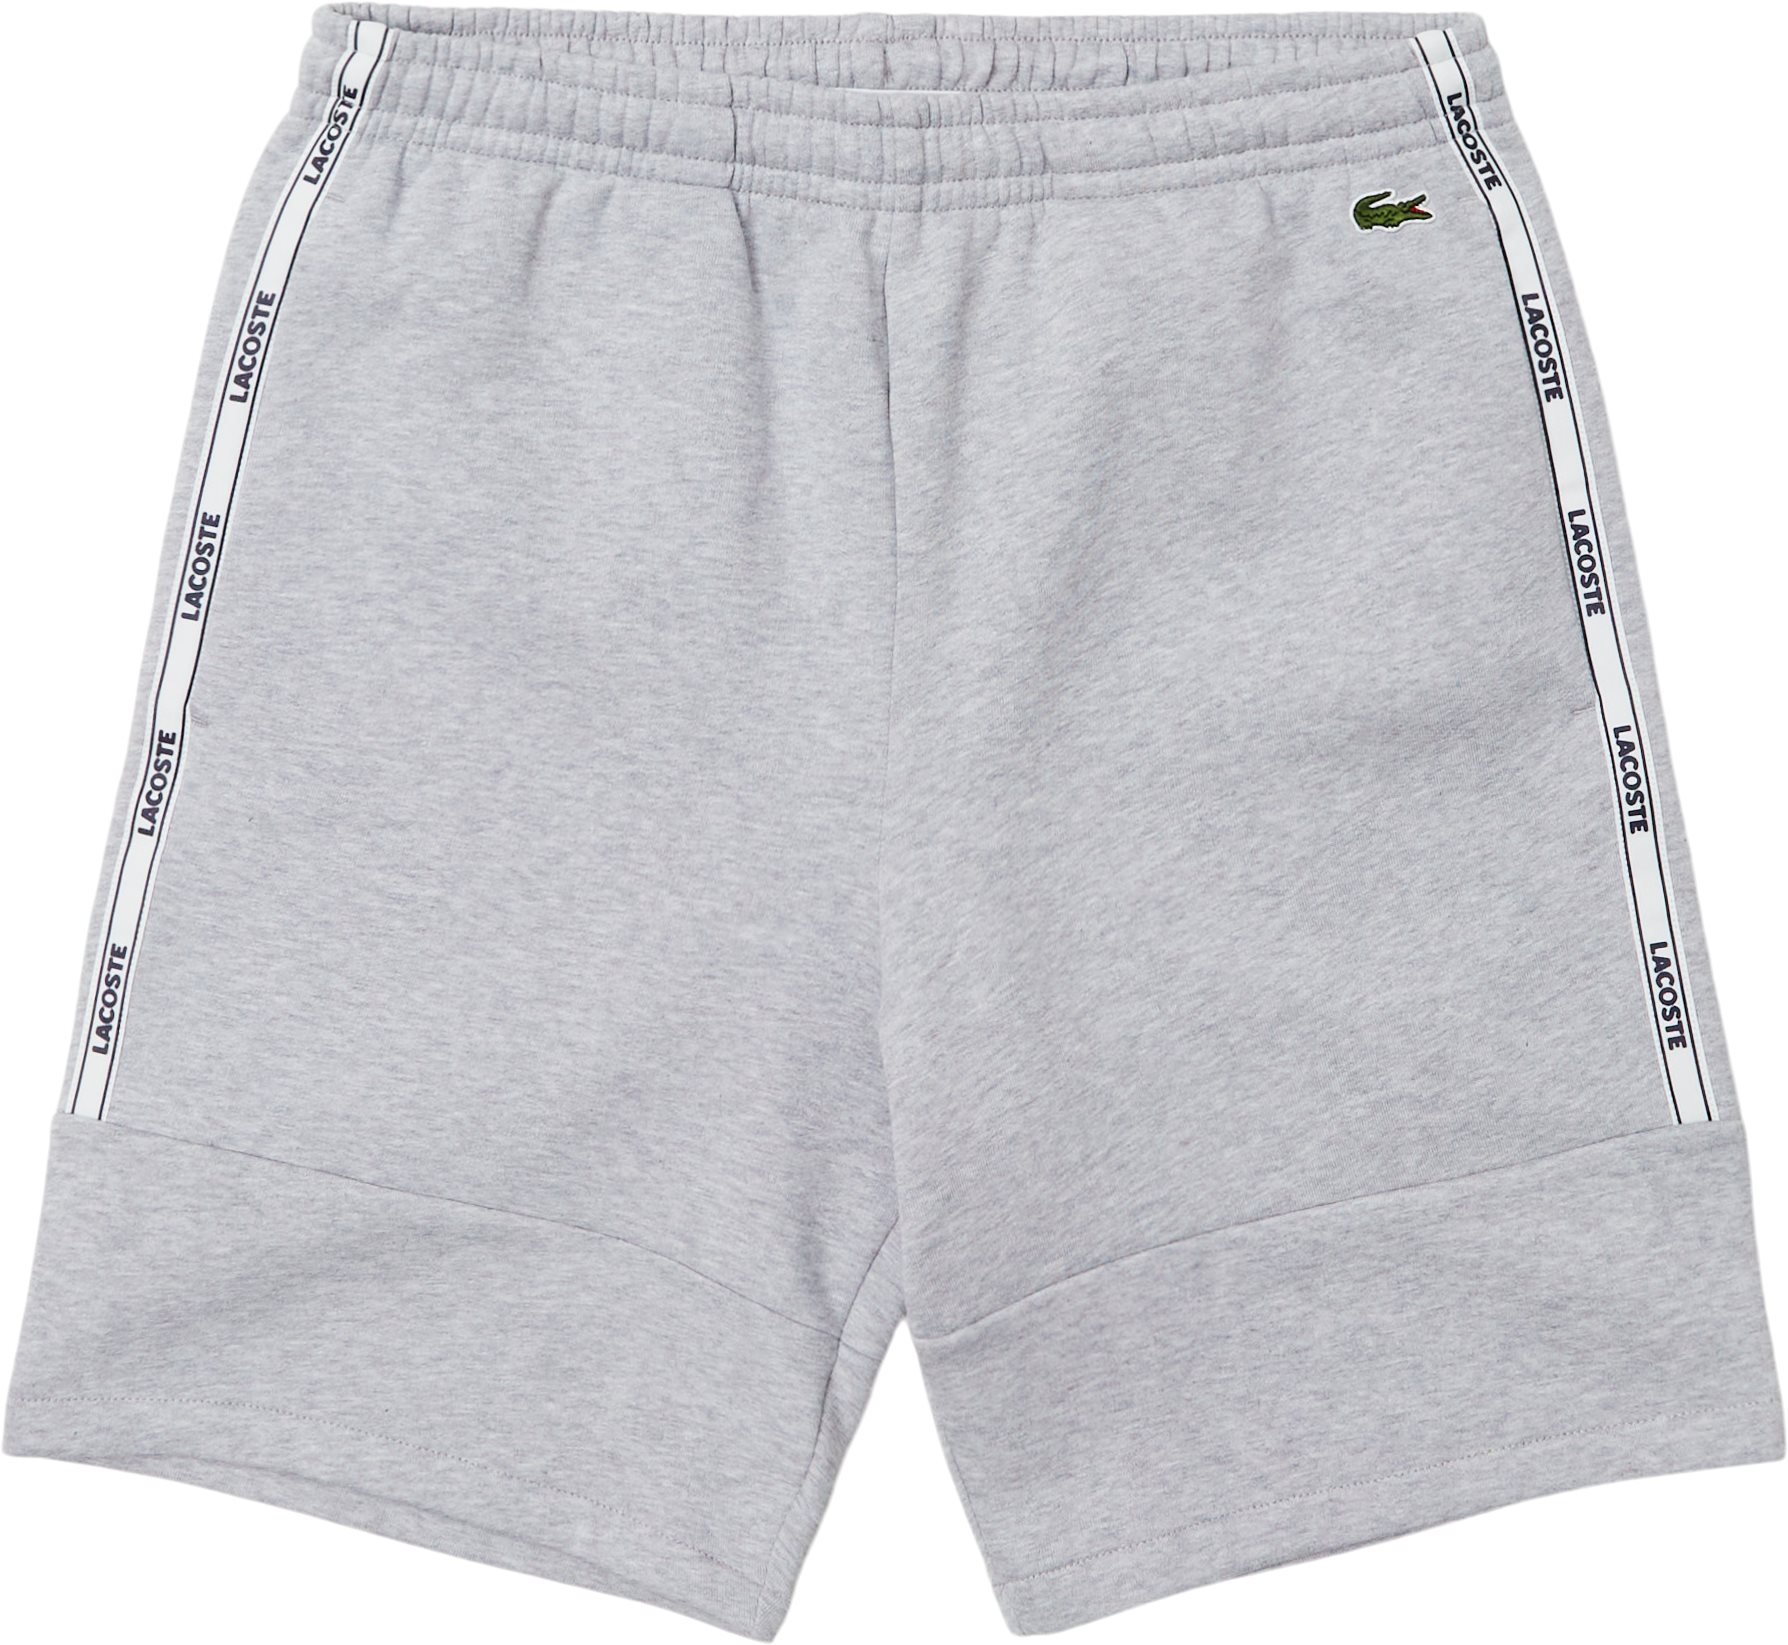 Gh1201 Sweatshorts - Shorts - Regular fit - Grå